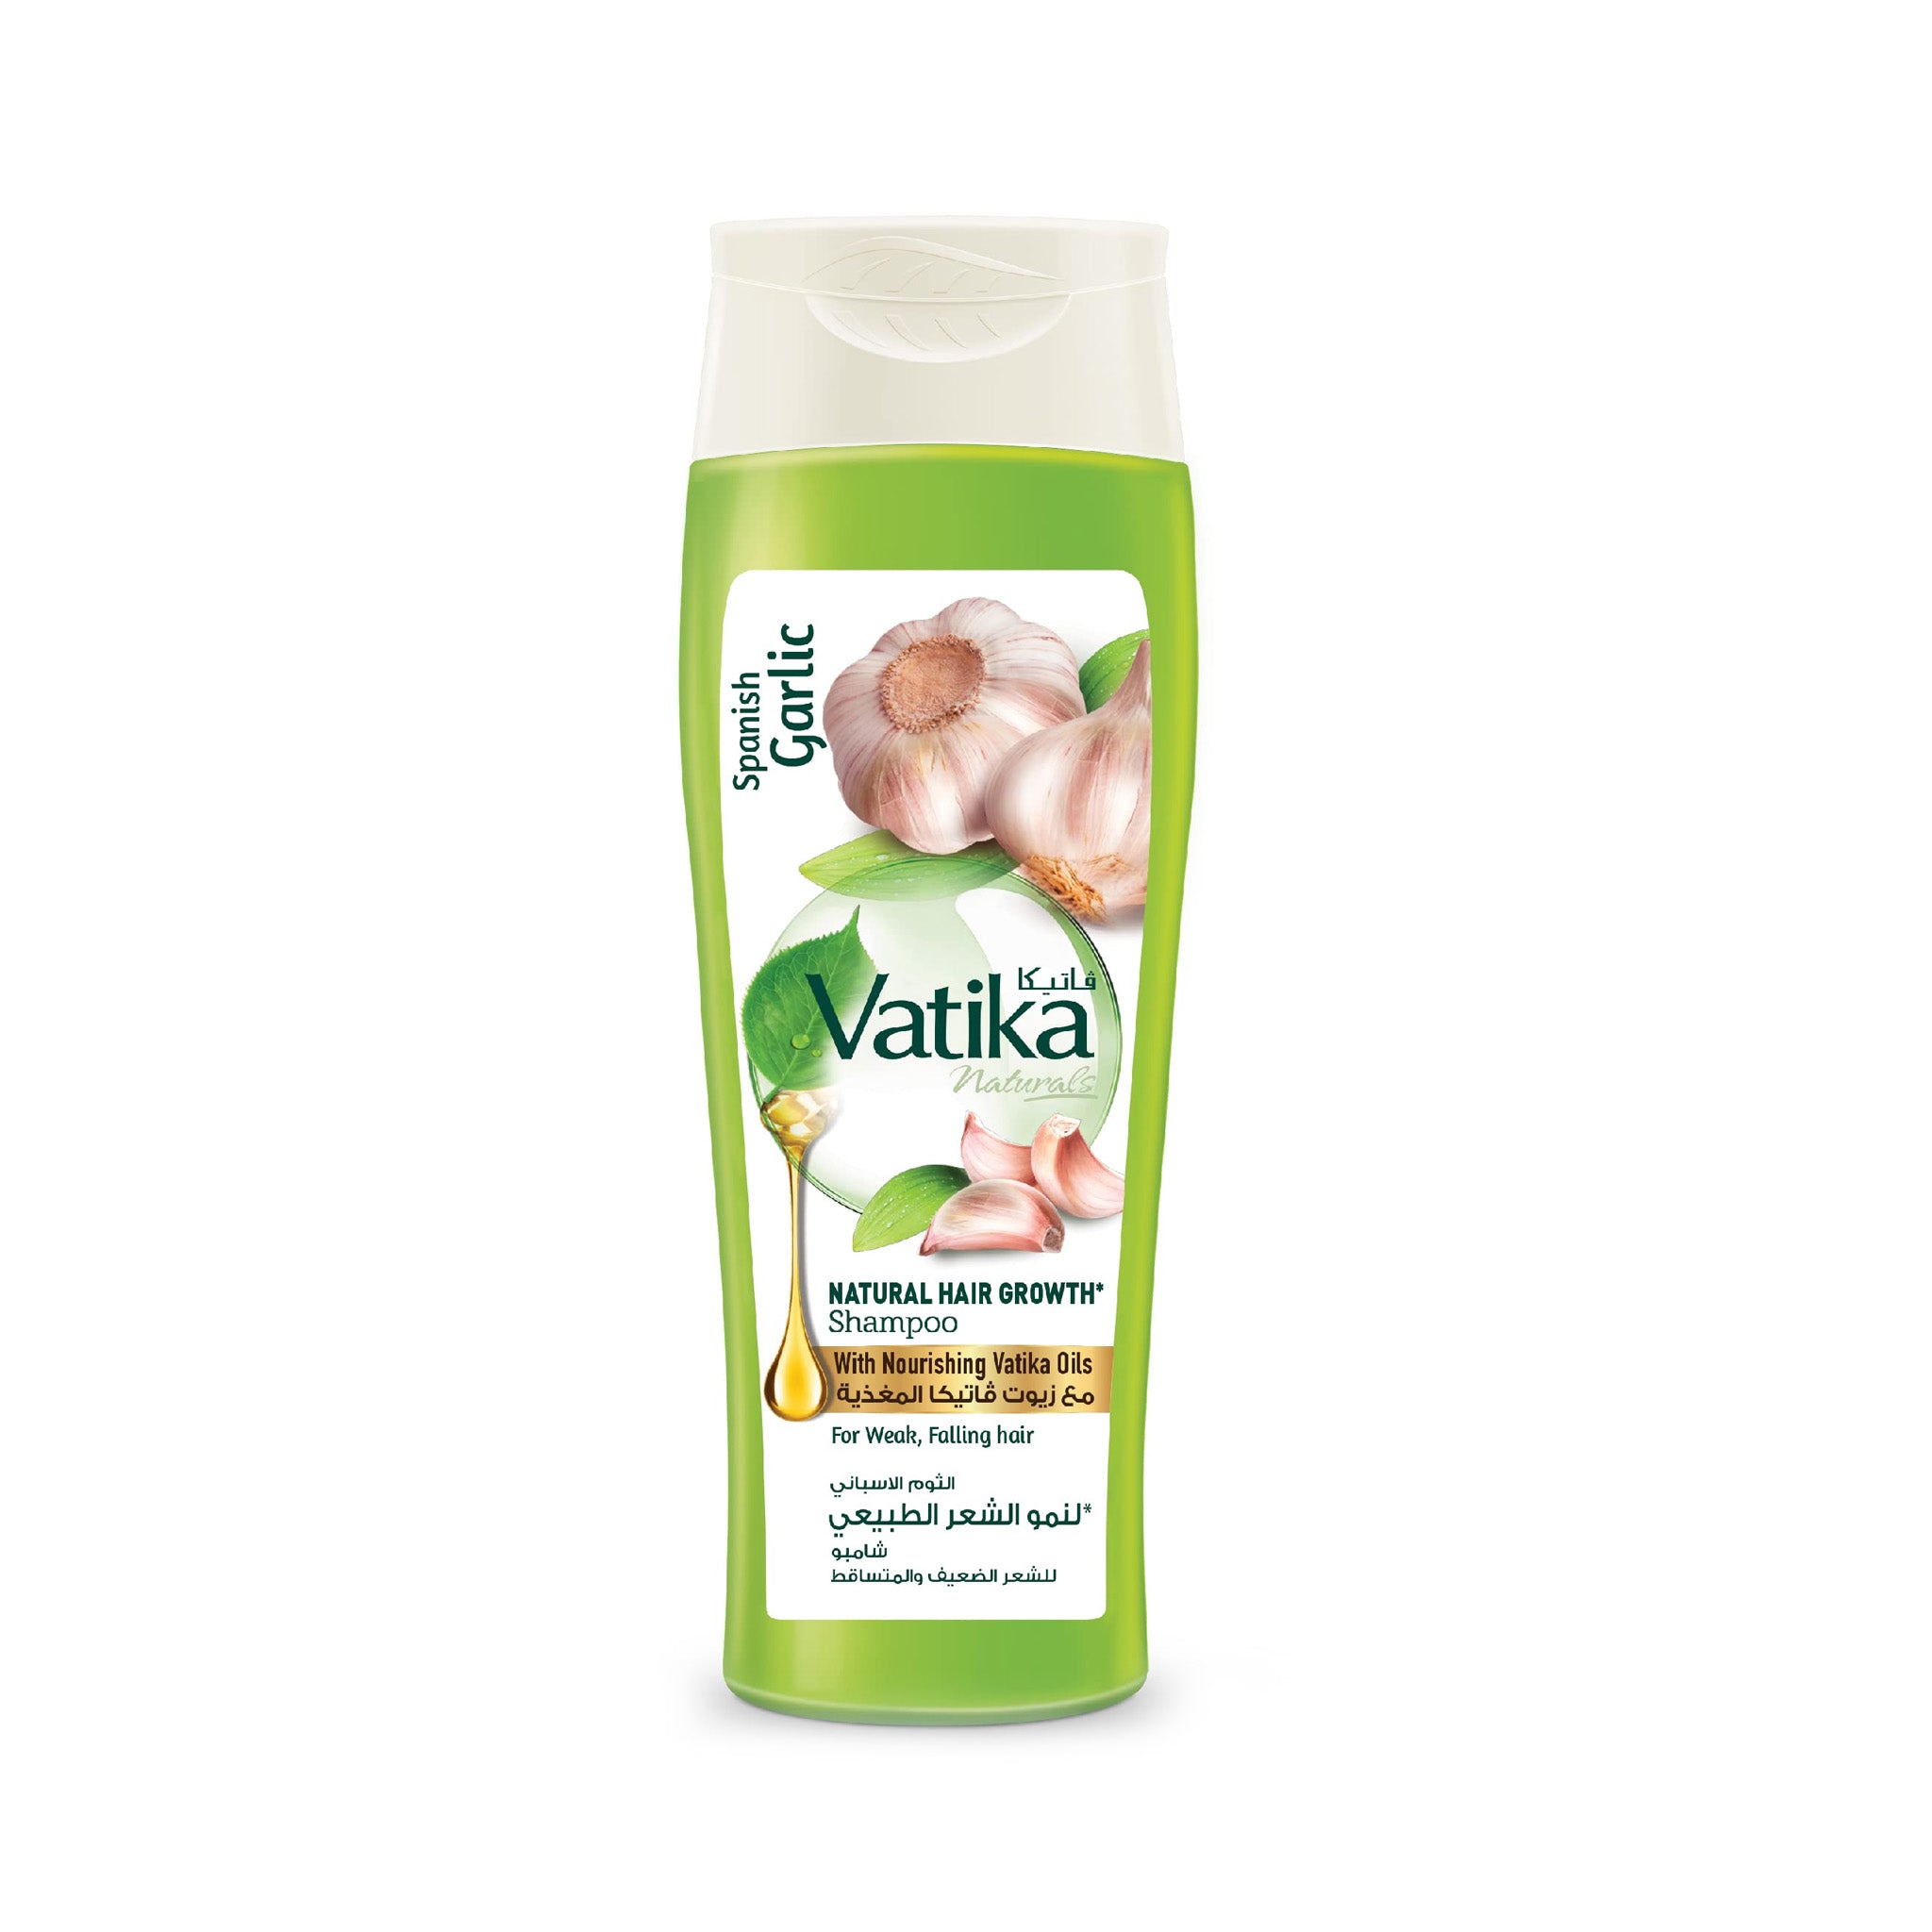 Vatika Naturals Shampoo